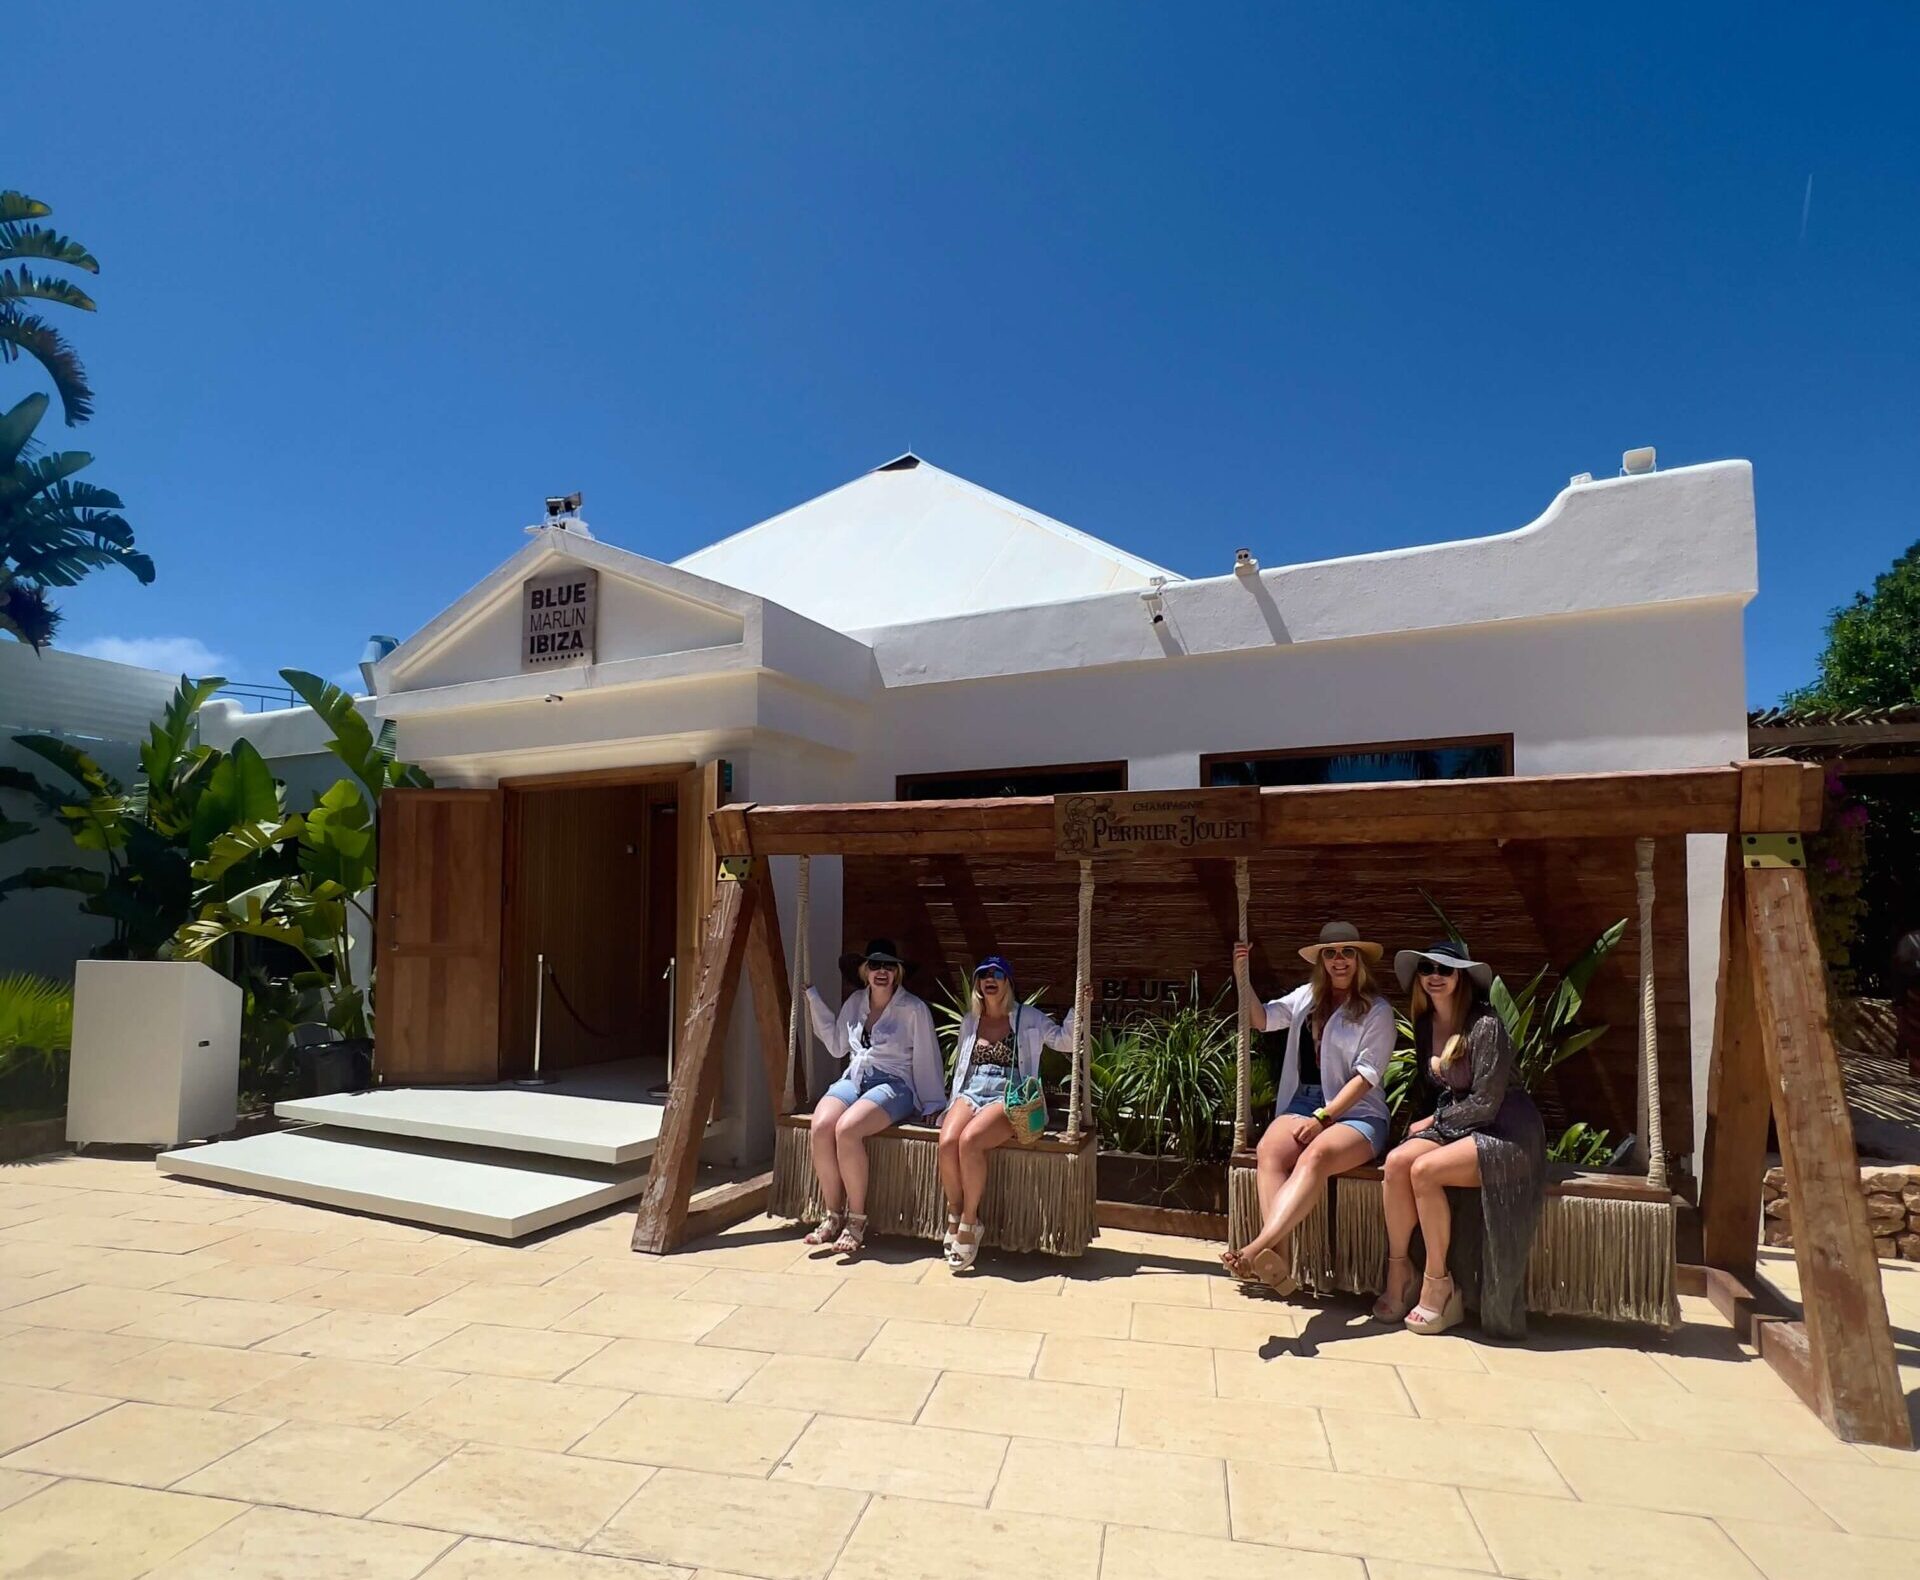 Four girls sat on a swing outside Blue Marlin beach club in Ibiza.